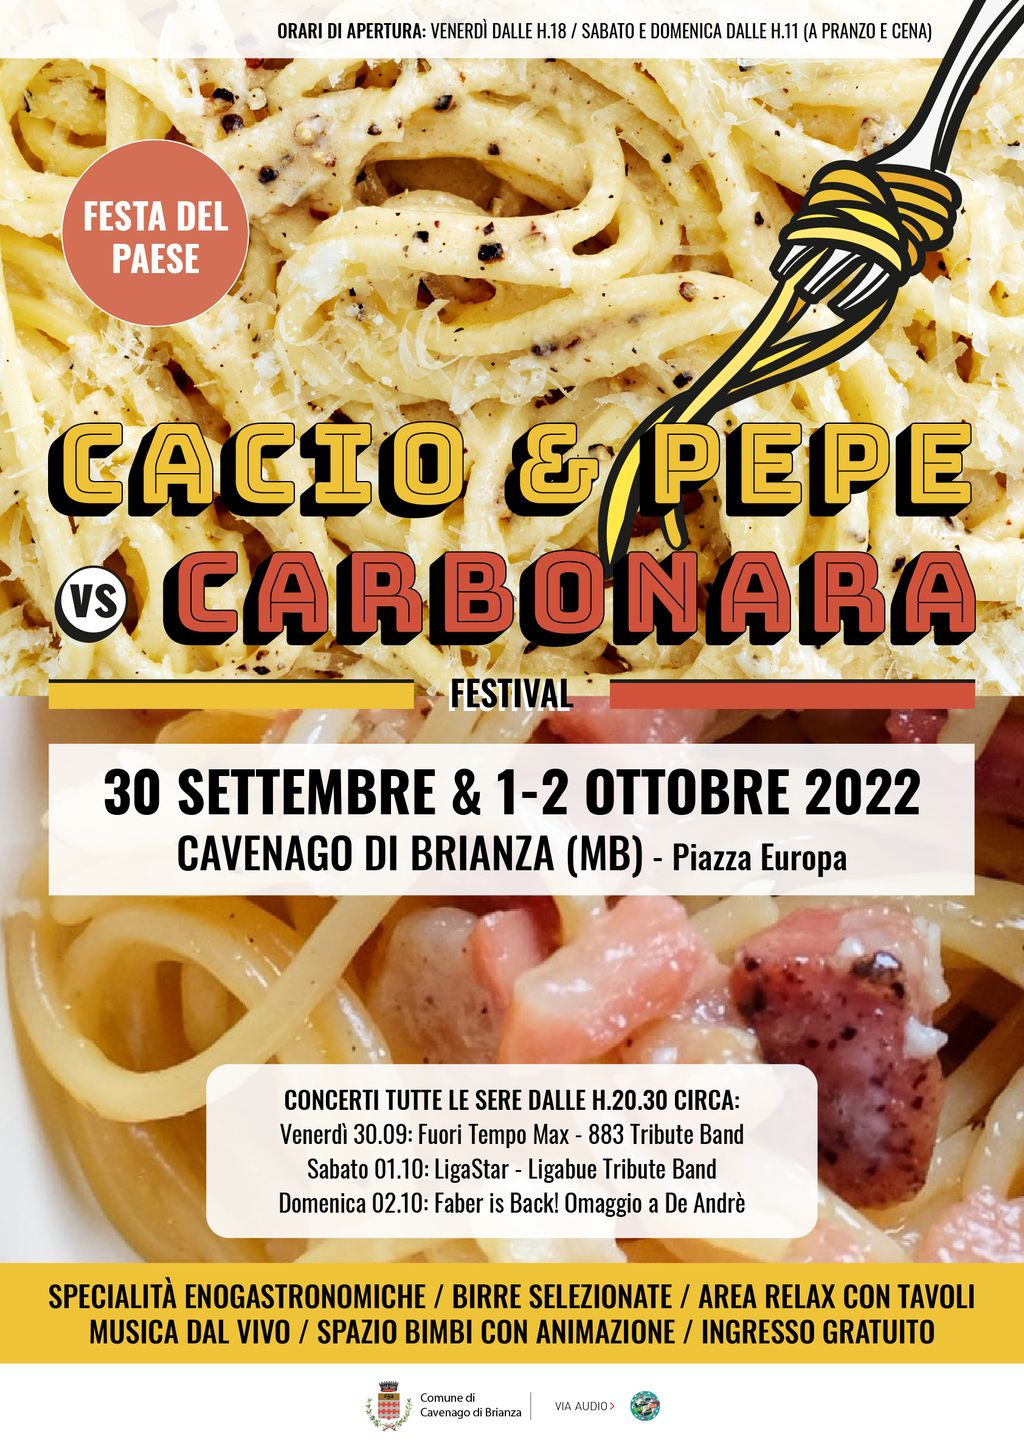 FESTA DEL PAESE 2022: Cacio & Pepe VS Carbonara Festival